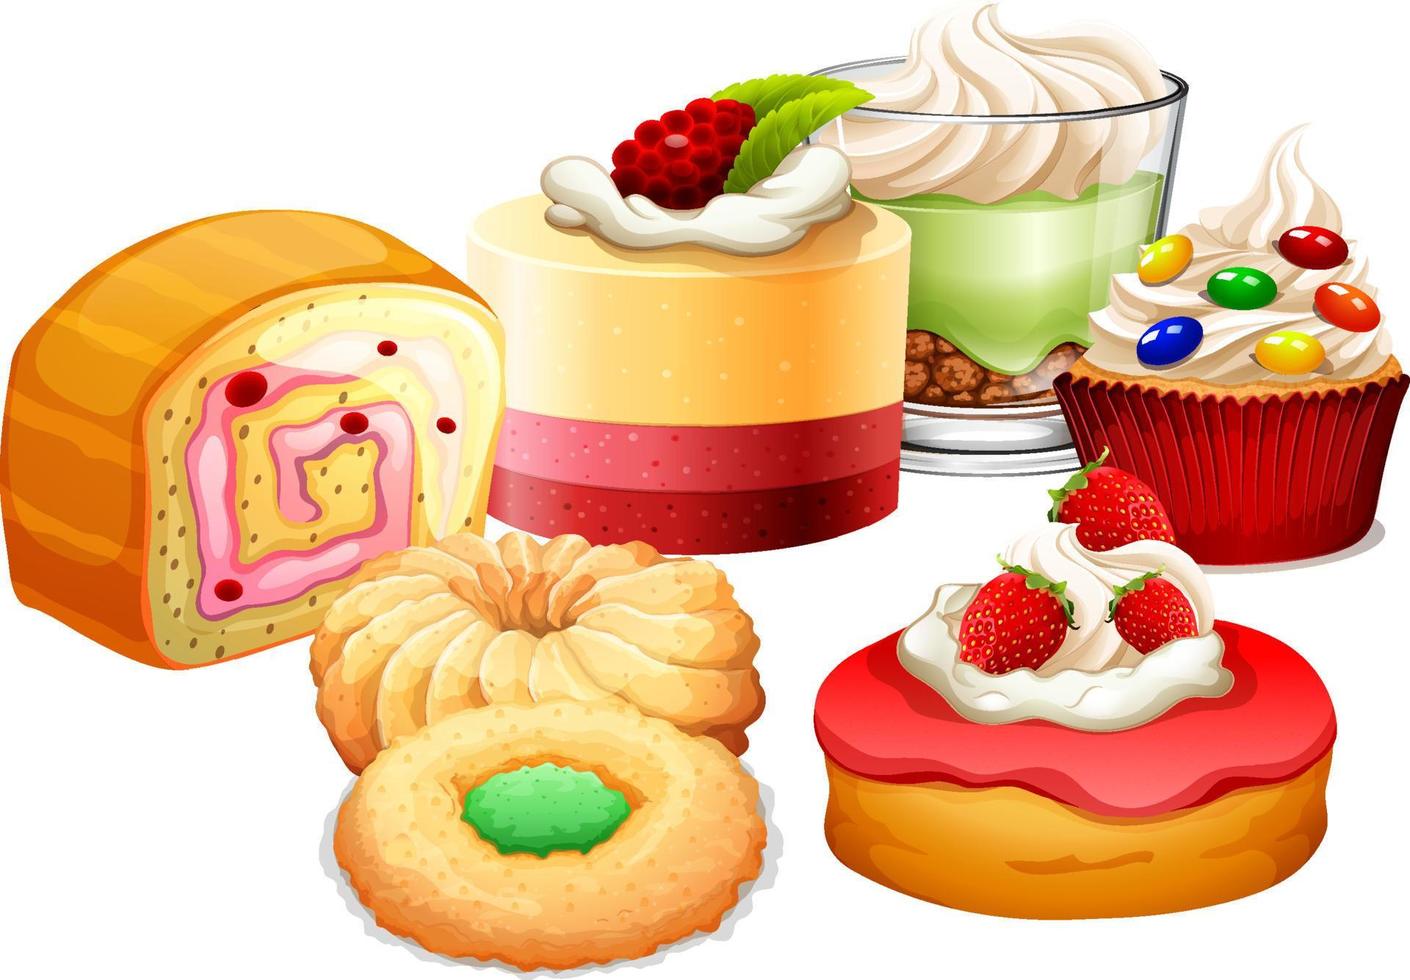 Sweet bakery dessert on white background vector